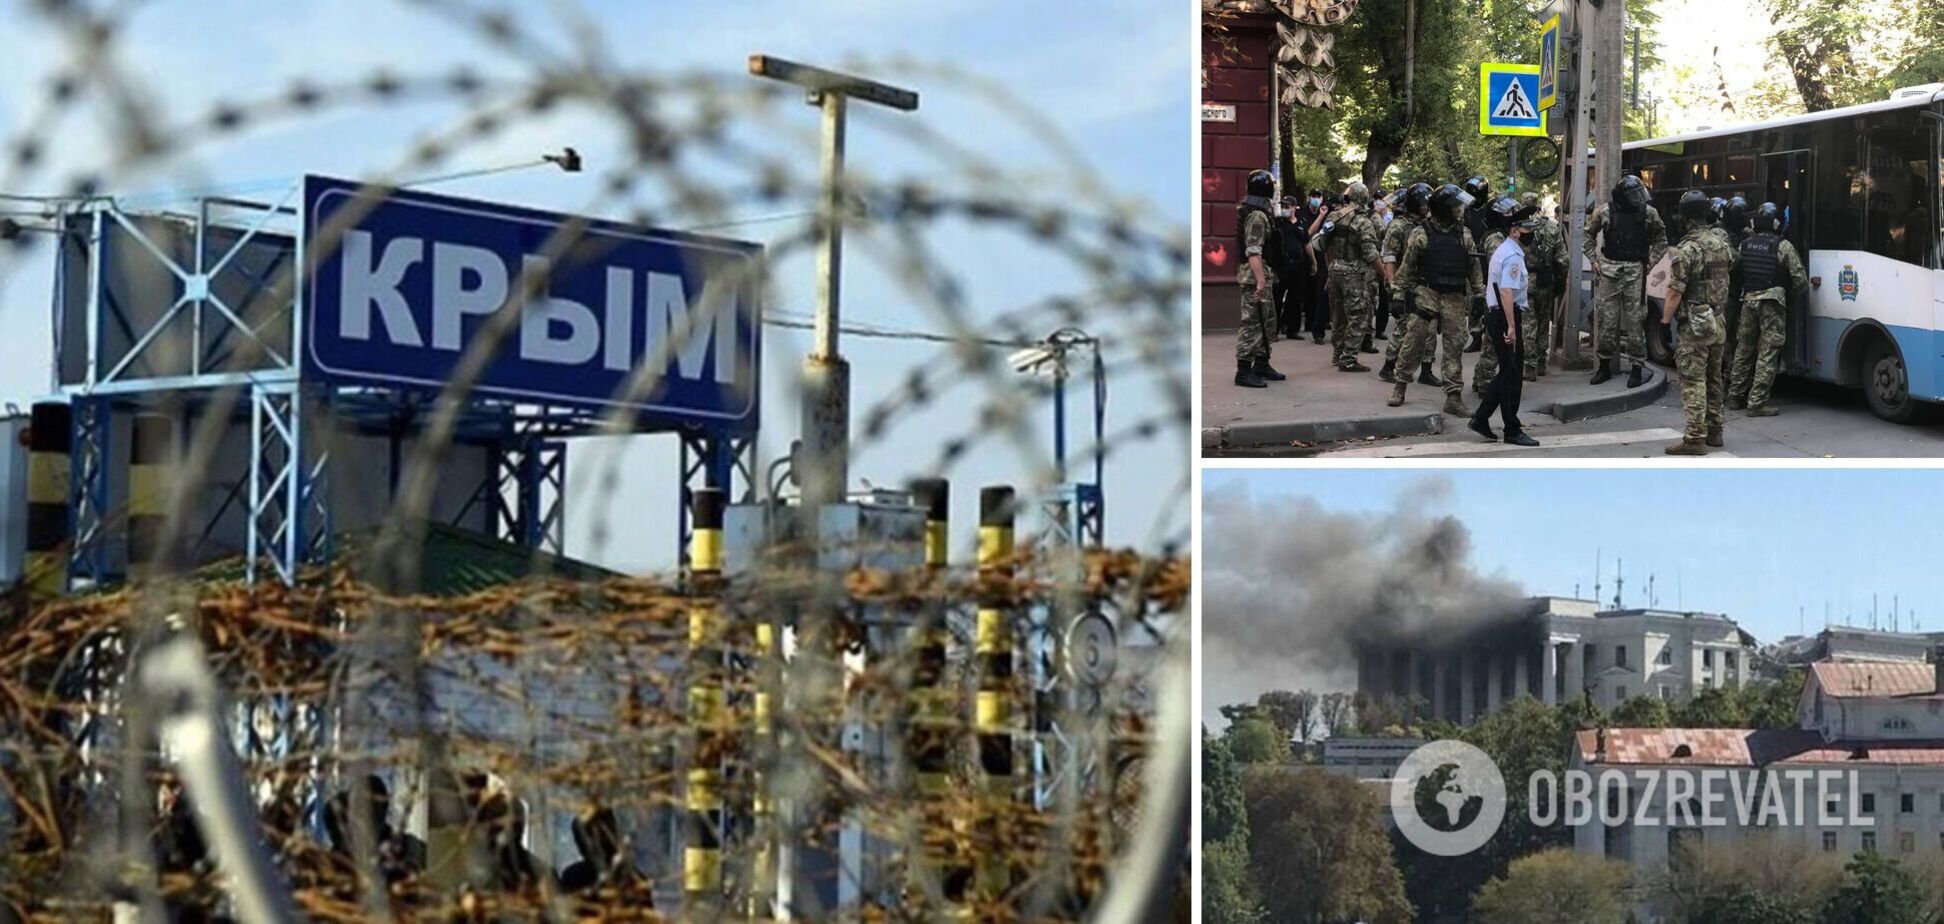 Оккупанты после ряда ударов ВСУ по военным объектам в Крыму усилили репрессии на полуострове: всплыли подробности